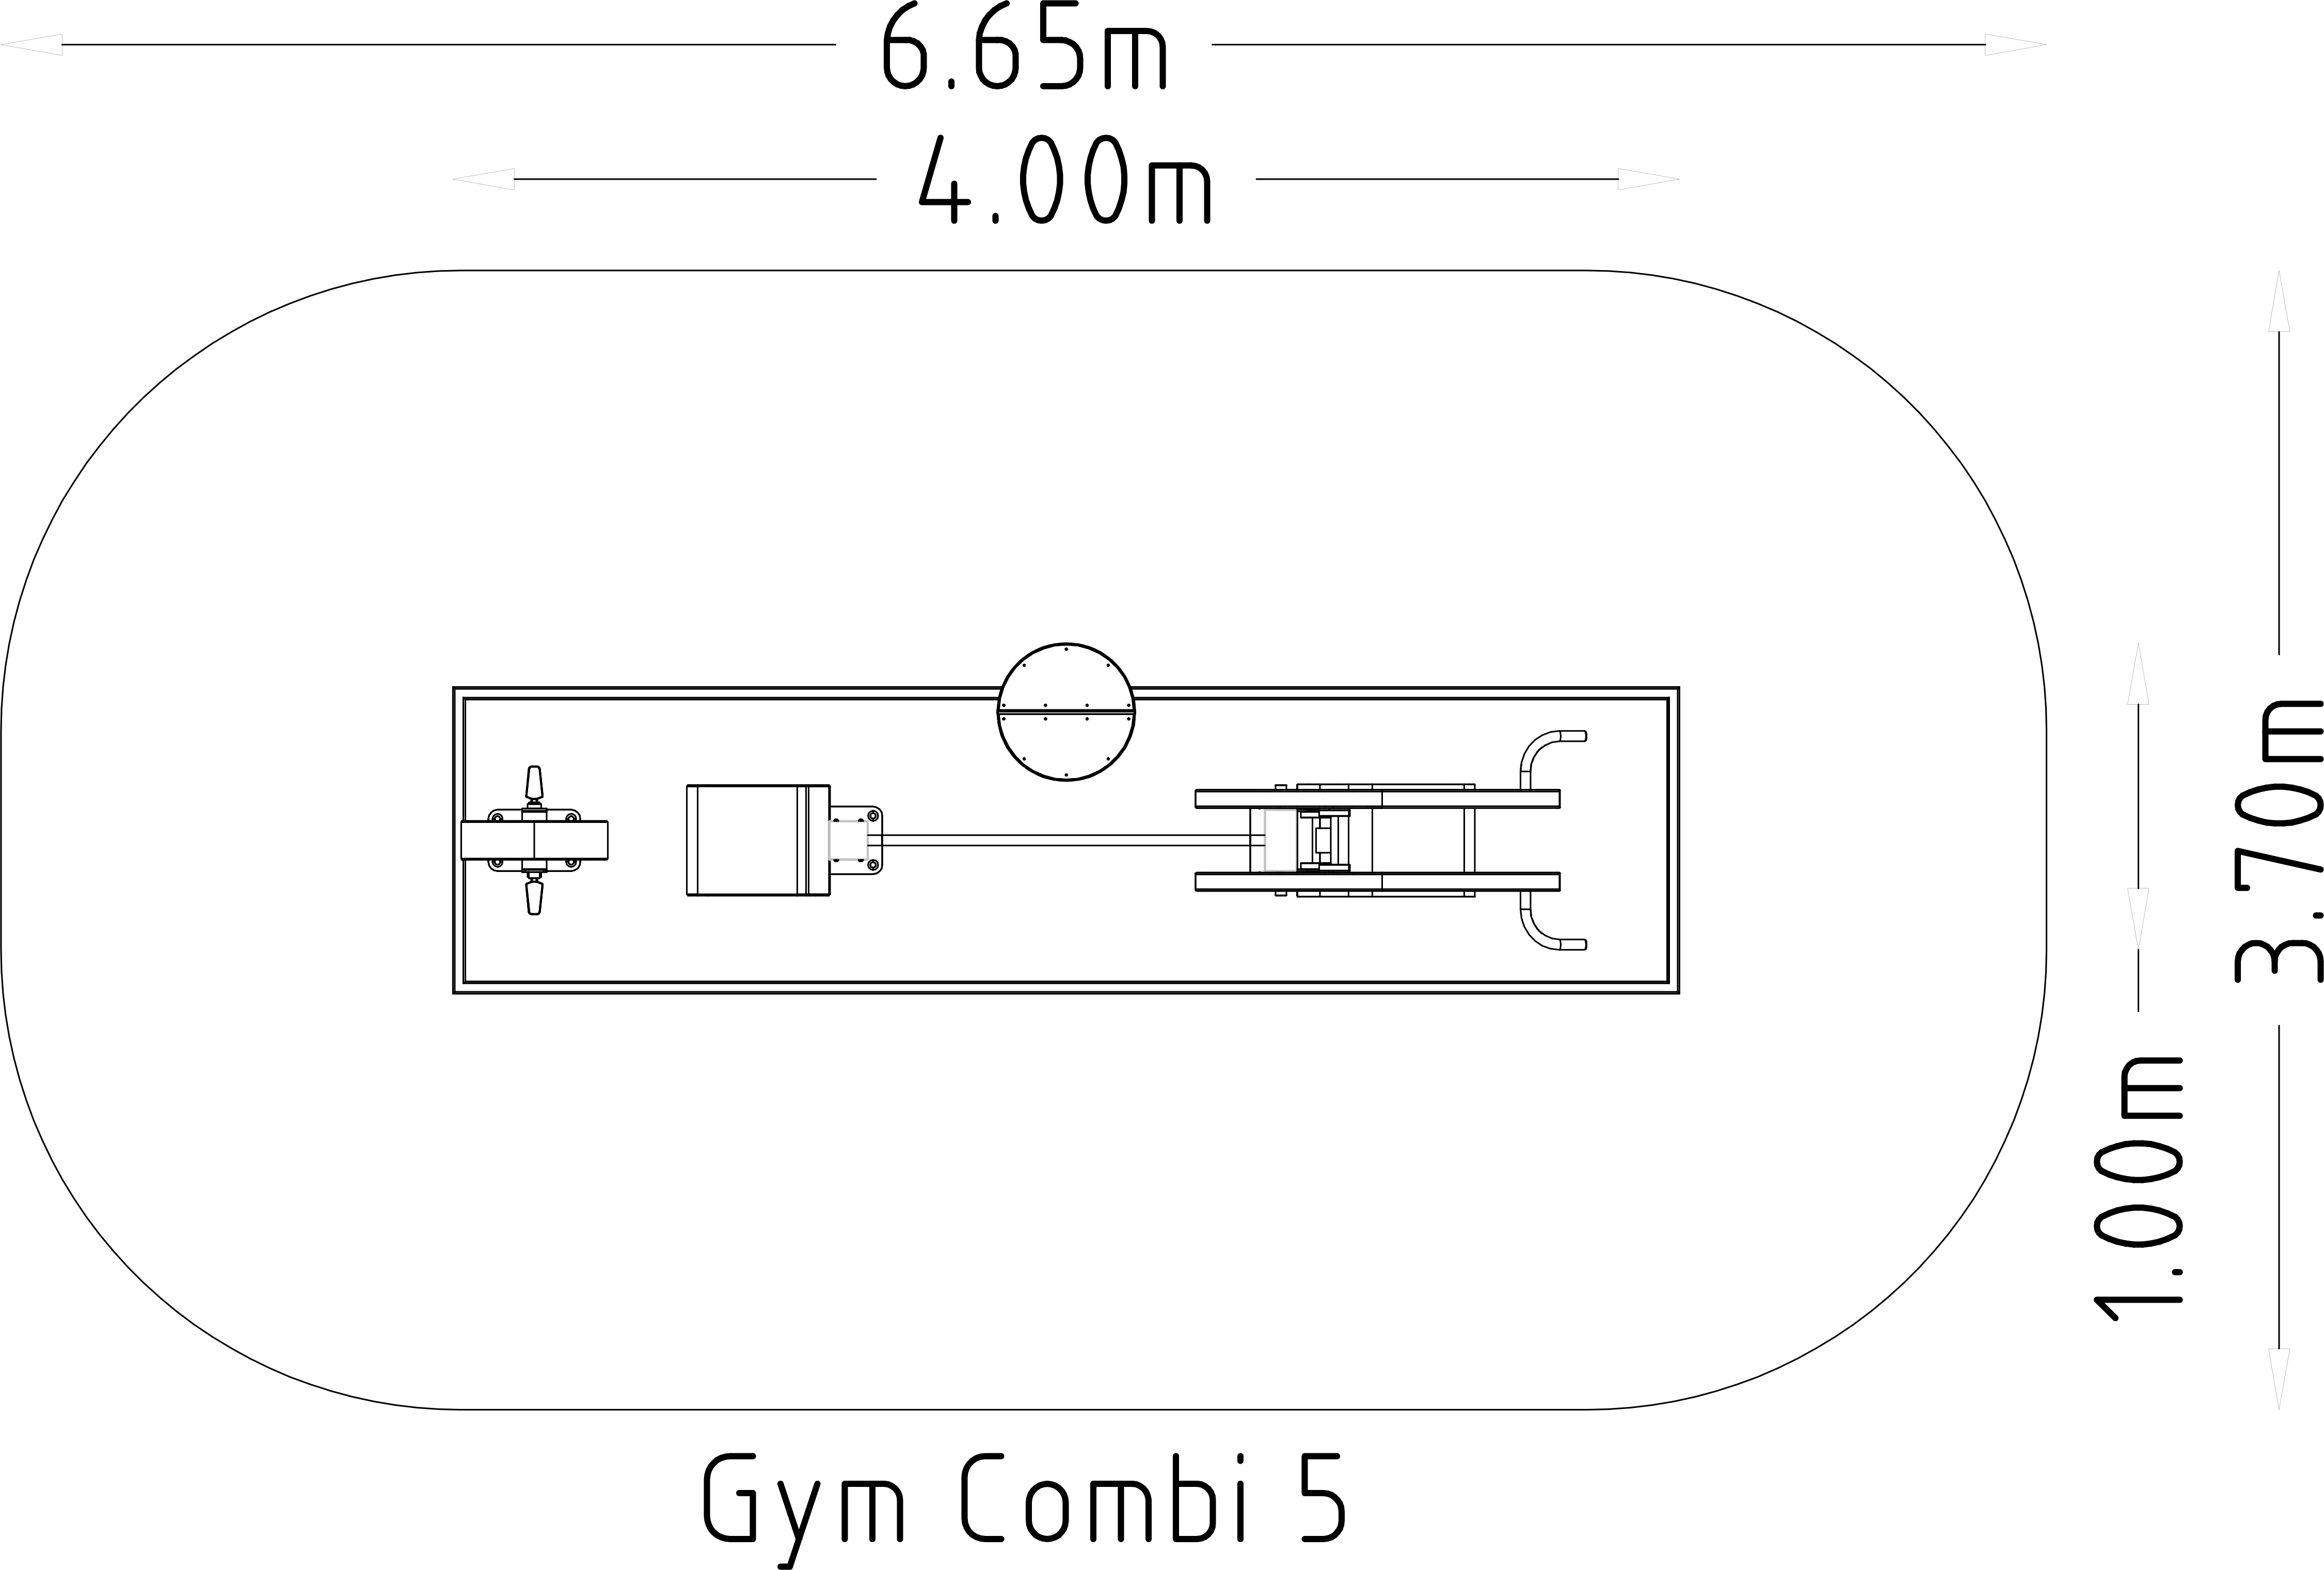 Denfit Gym Combi 5